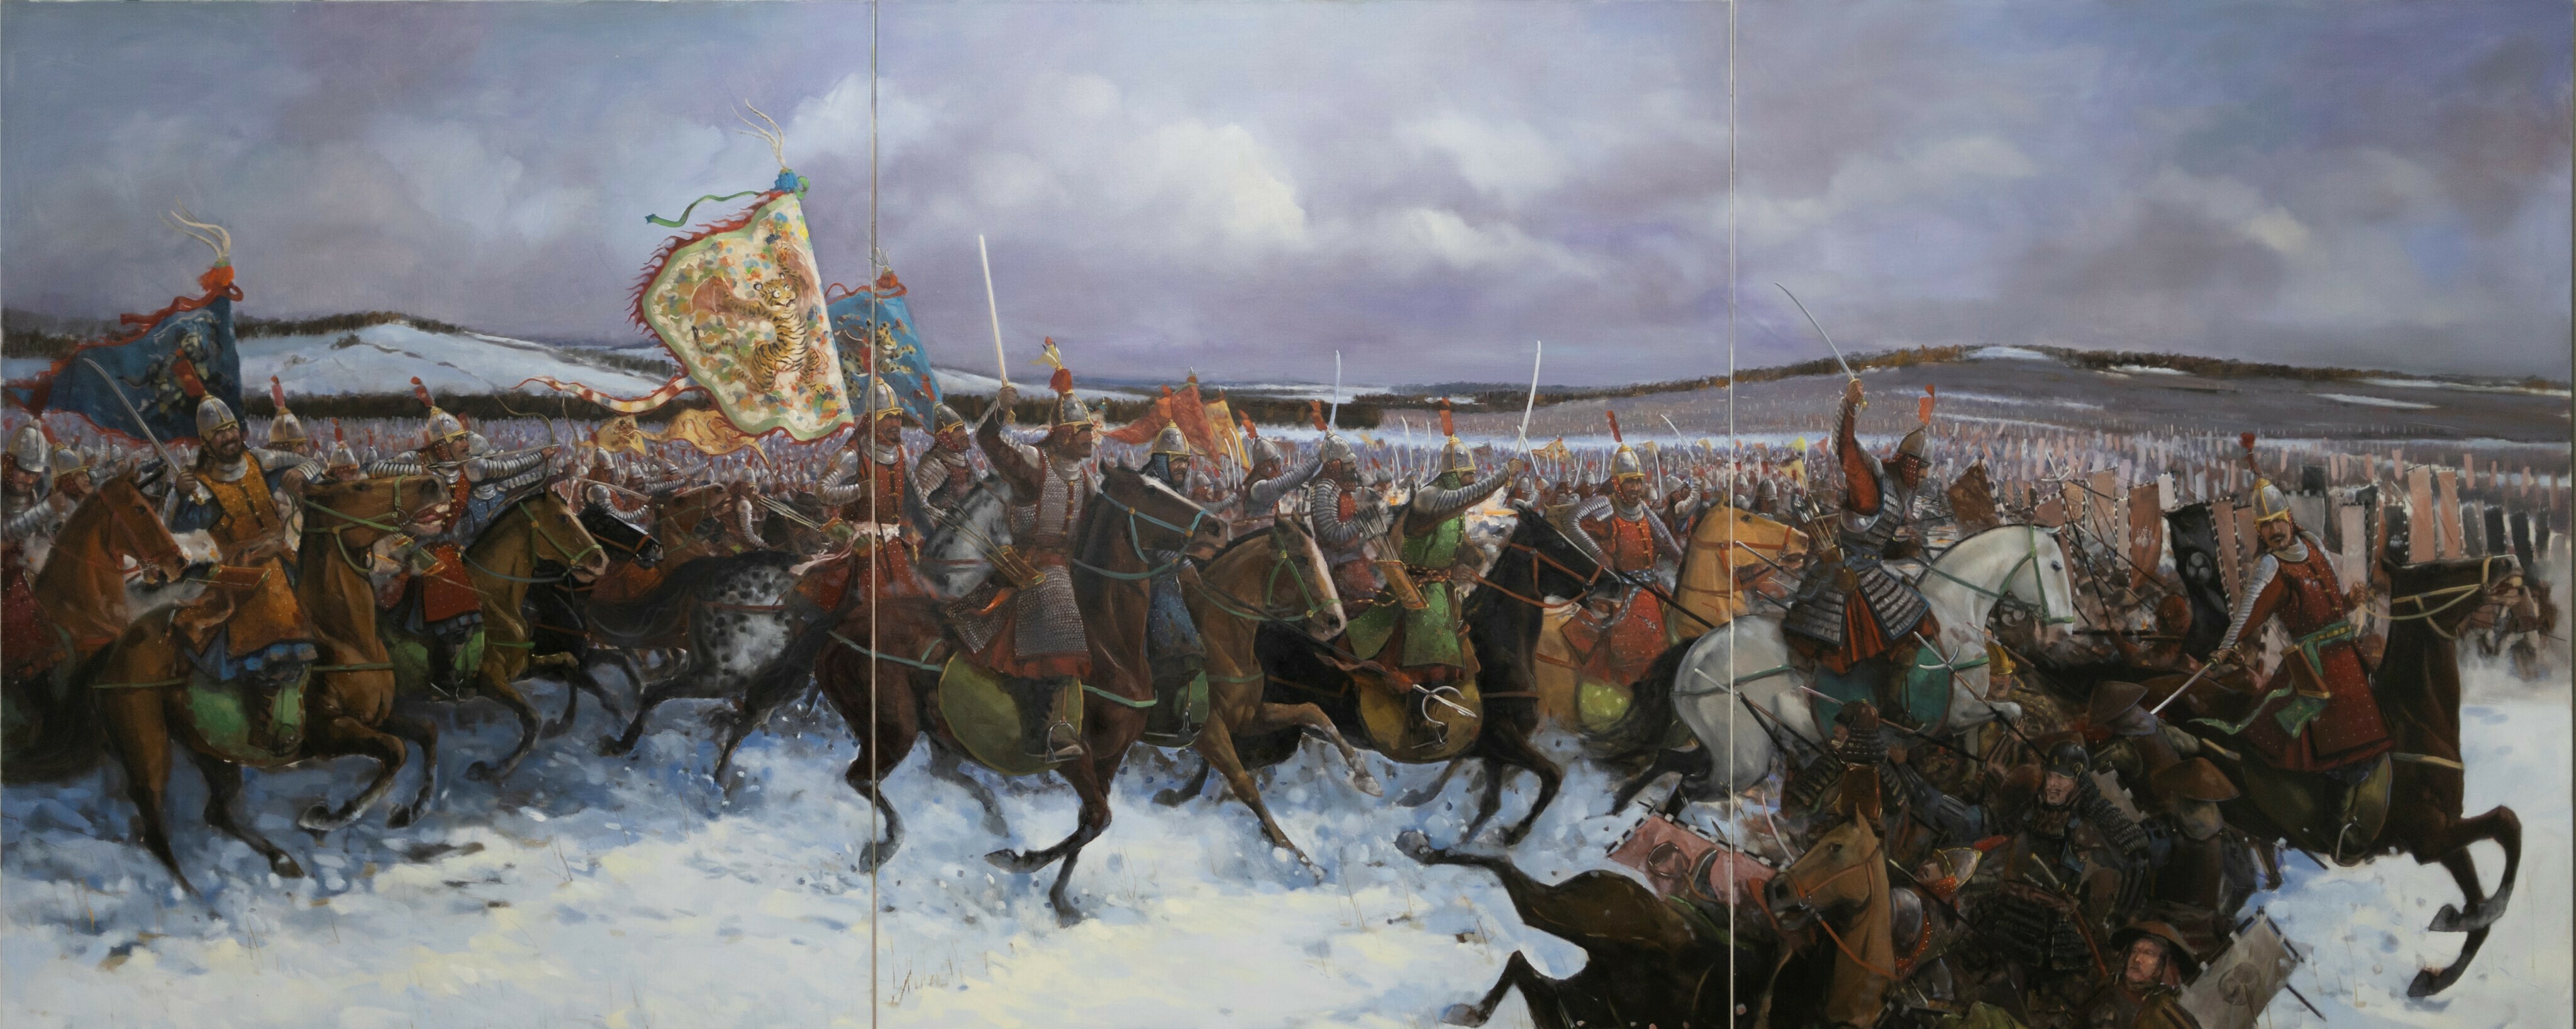 来自画家冯子健的画作《碧蹄馆之战》，画面上的明军将士身披布面铁甲英勇作战